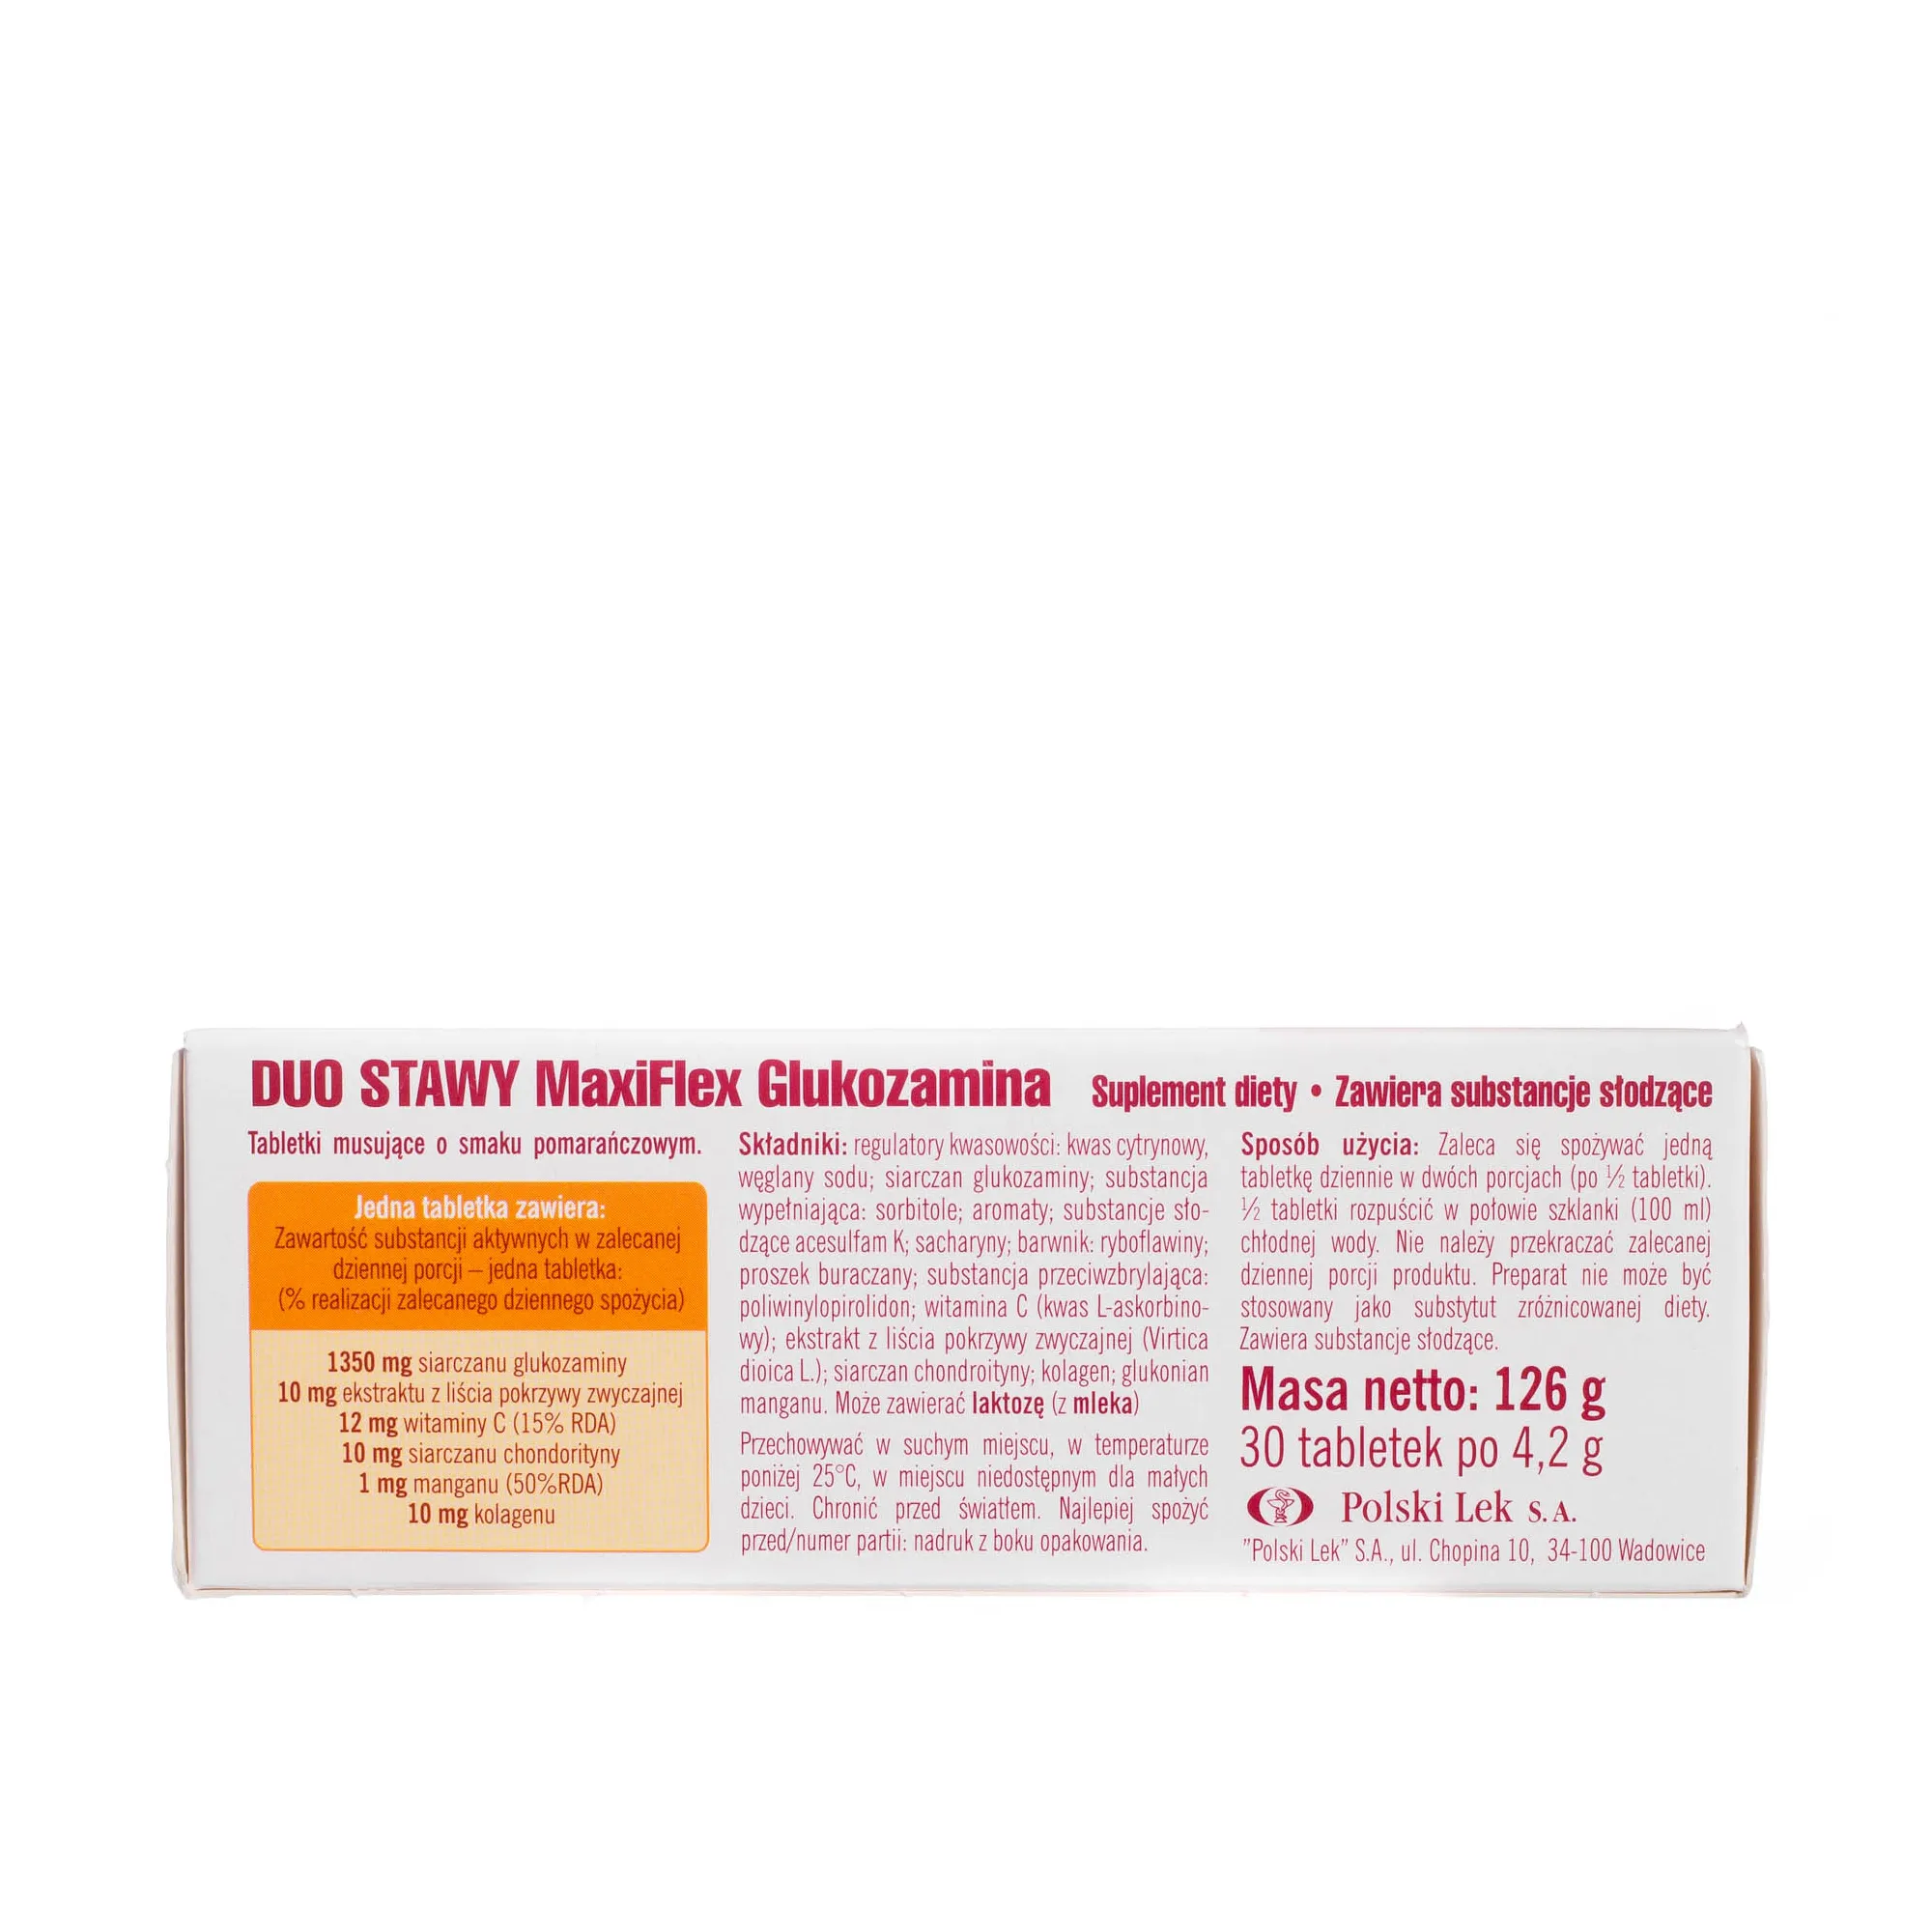 Duo Stawy MaxiFlex glukozamina, 1350 mg siarczanu glukozaminy, 30 tabletek musujących 